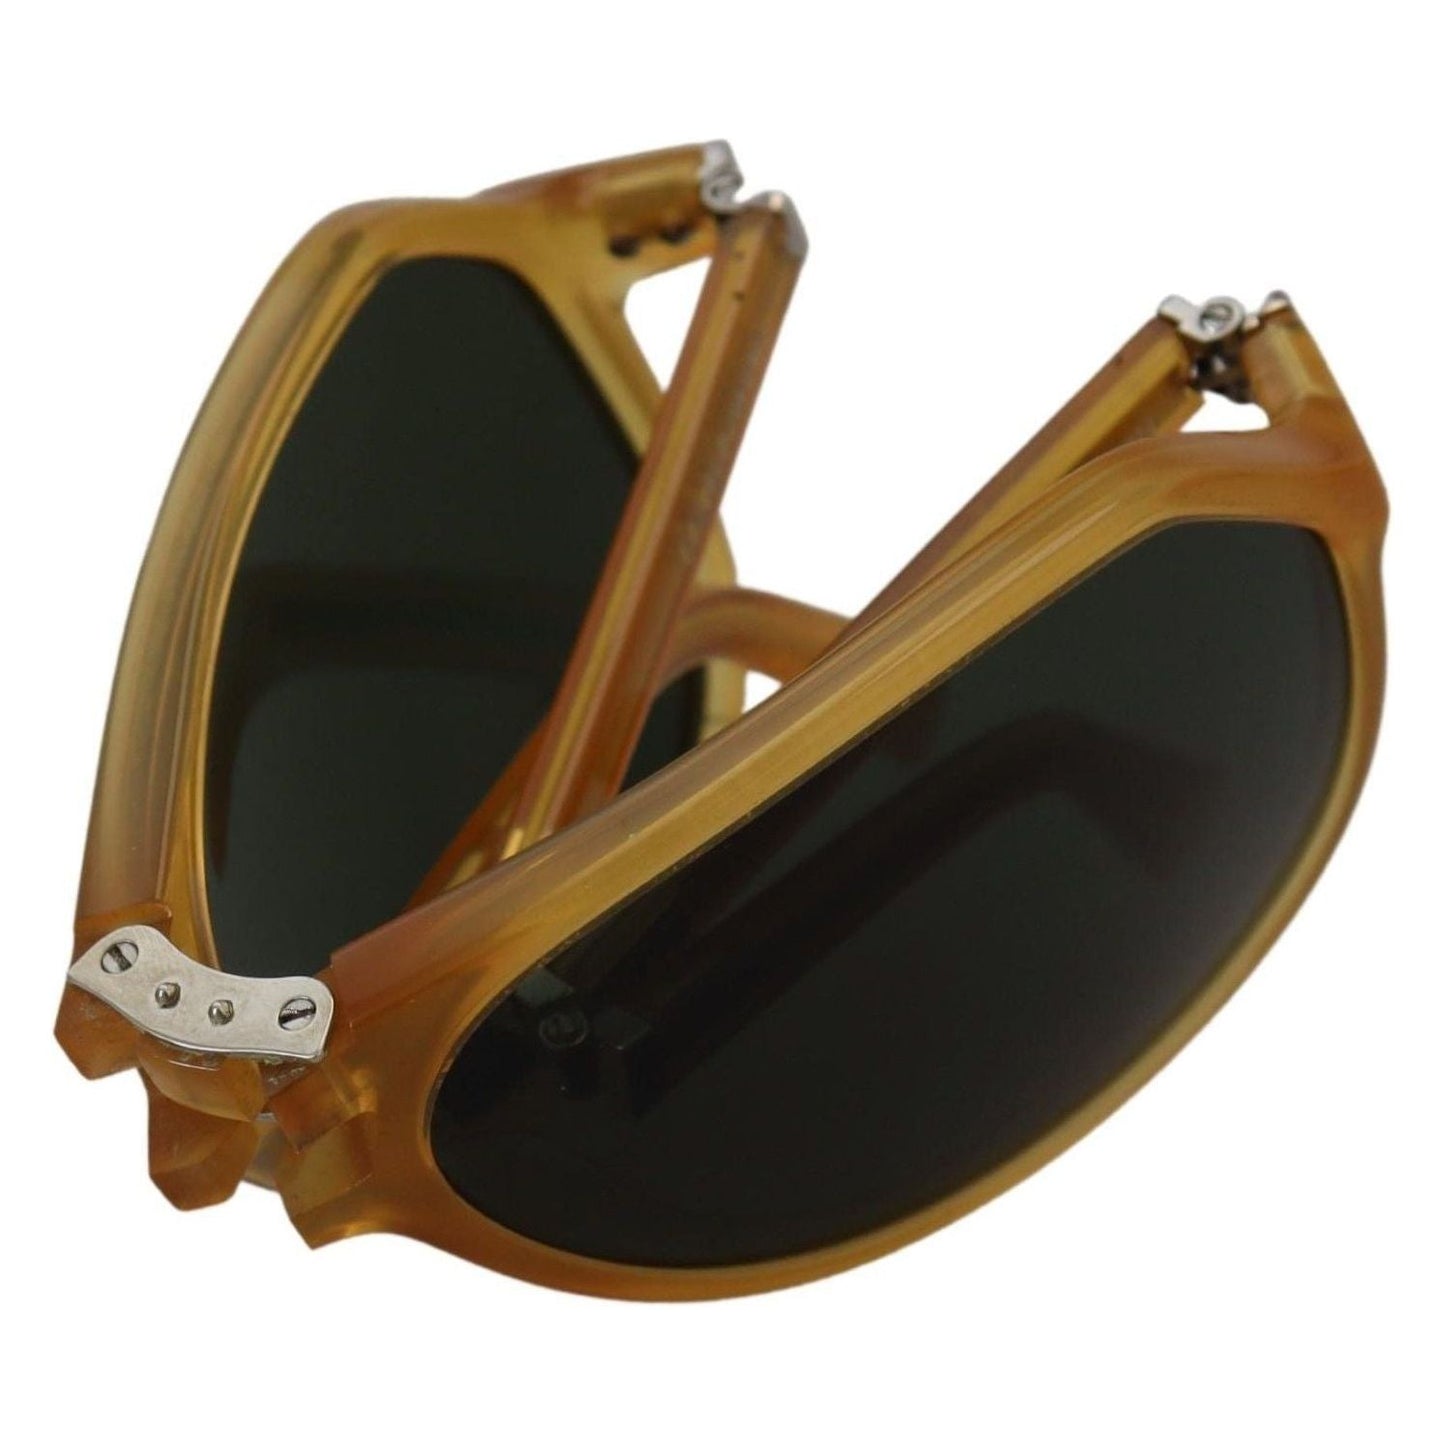 Dolce & Gabbana Chic Yellow Aviator Acetate Sunglasses yellow-acetate-black-lens-aviator-dg4196-sunglasses IMG_3759-0bd2b63f-12c.jpg